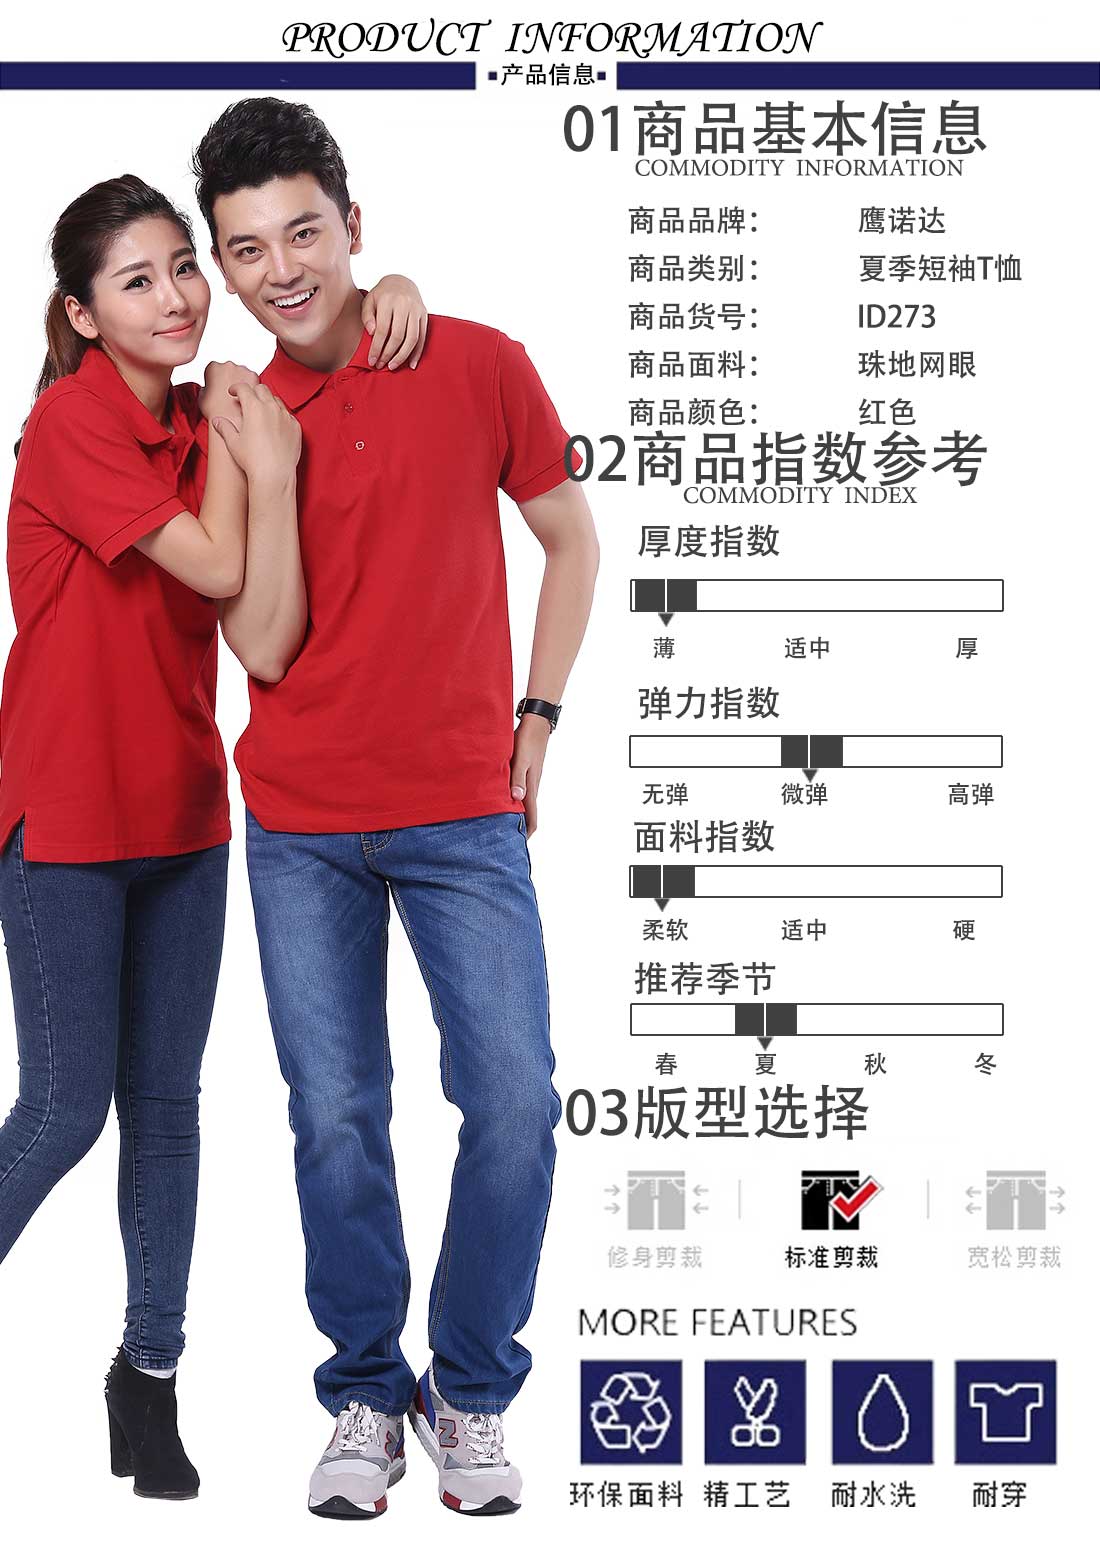 广州广告衫制衣厂商品基本信息、指数参考、版型选择 